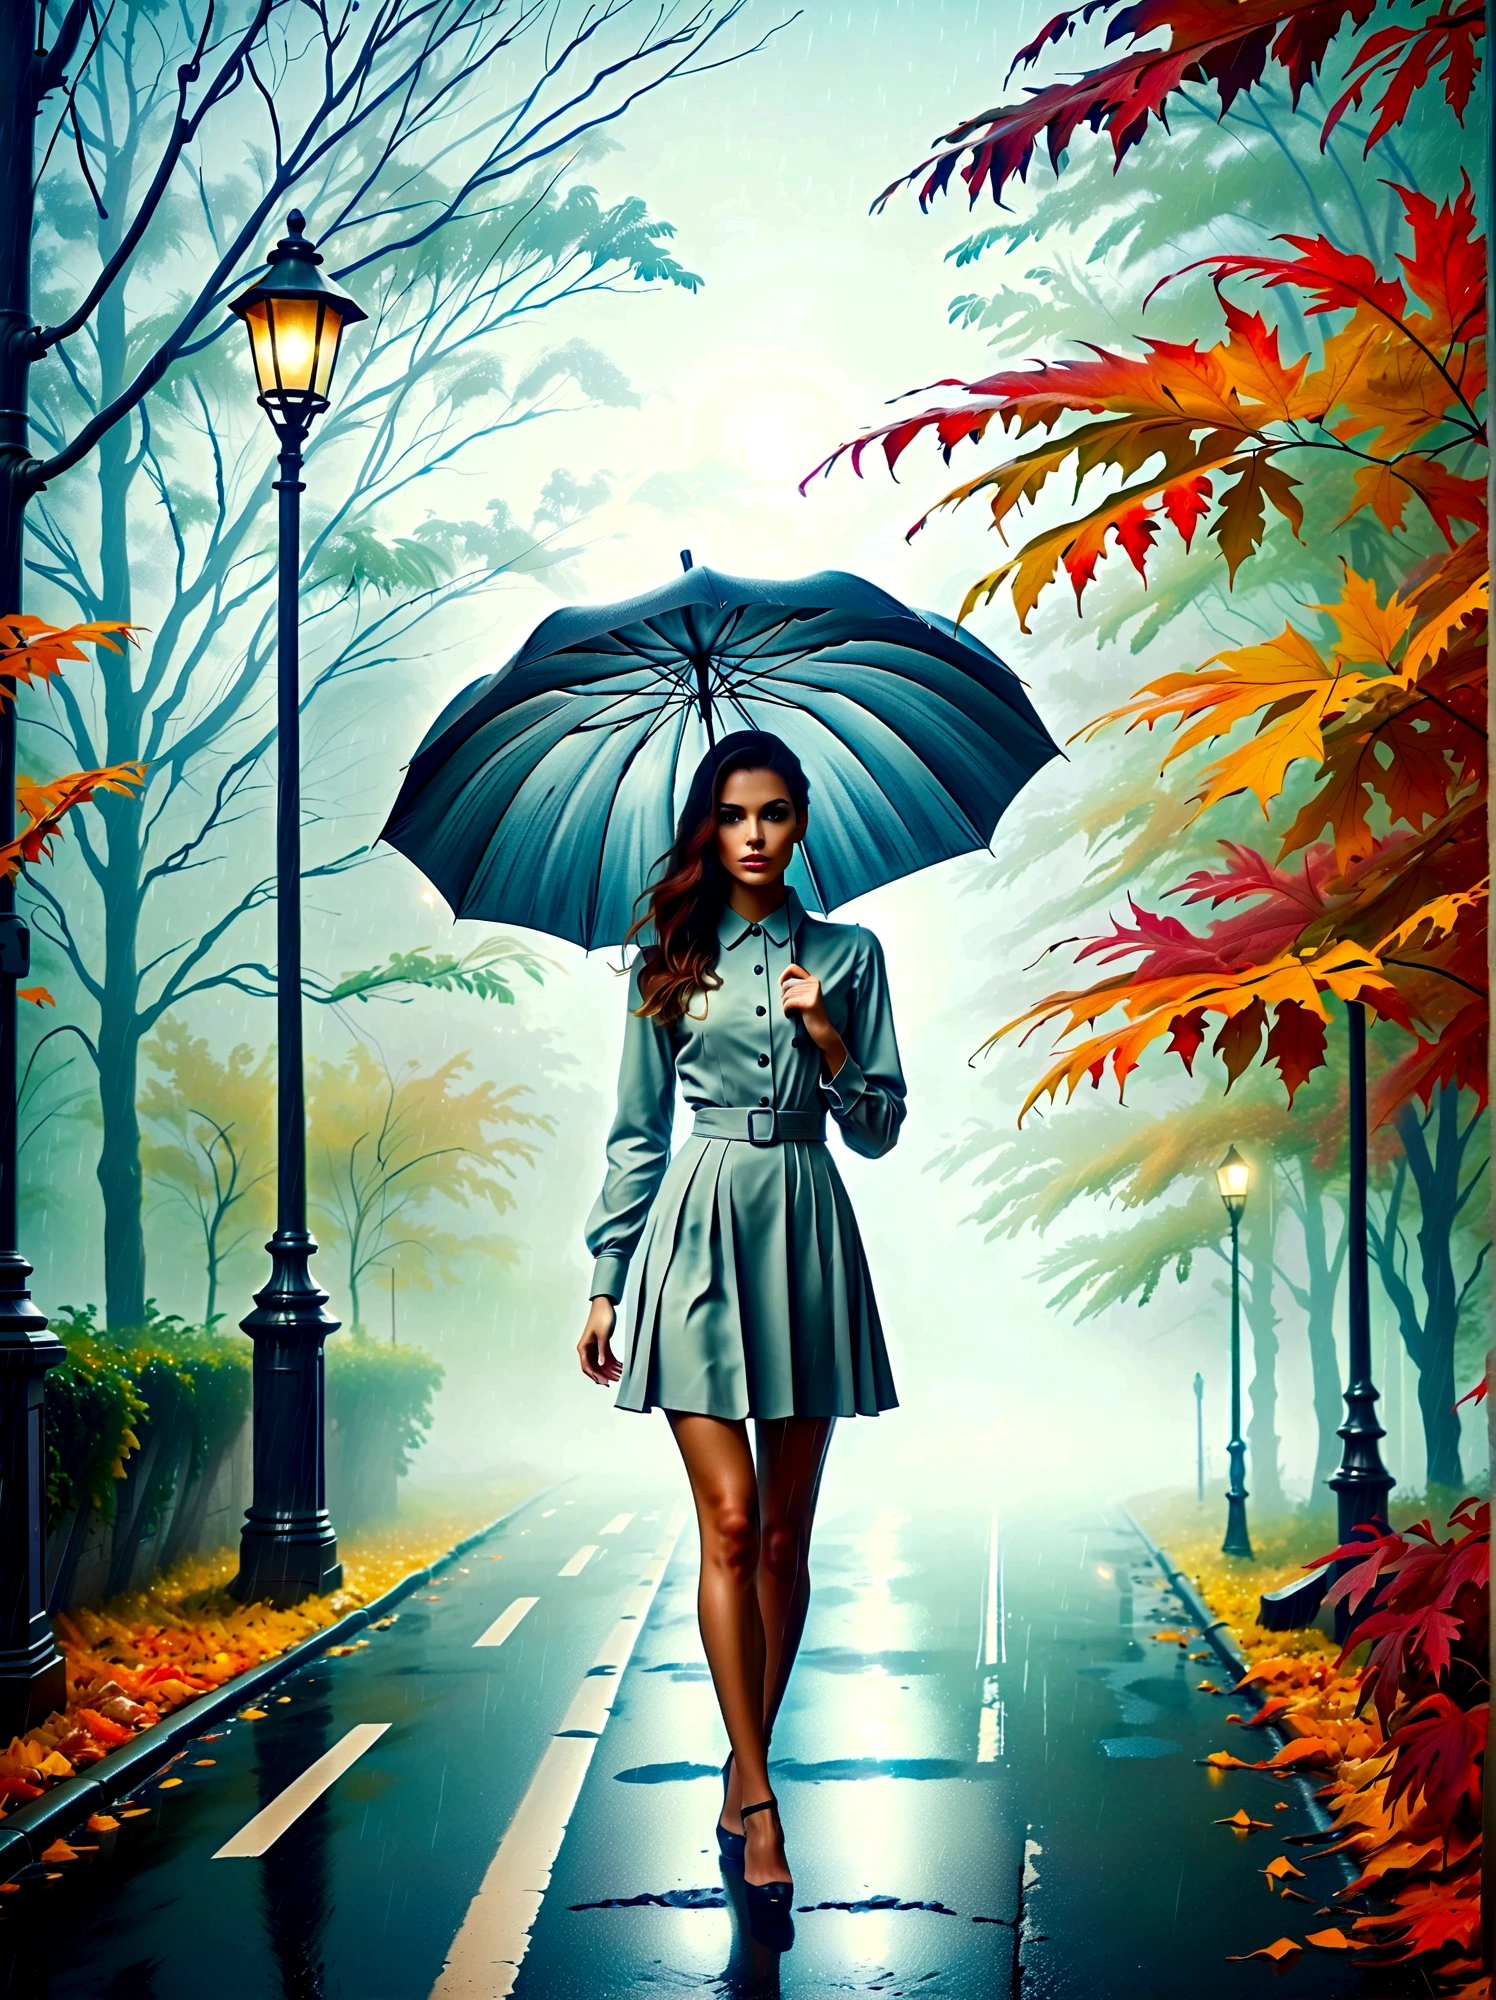 傘を手に持ったタイトなドレスを着た女性, in einer 霧深いen Stadt, 街頭に色とりどりの紅葉, クノ・ヴィーバーによる写真, pixabayコンテスト優勝者, コンセプチュアルアート, 雨の中に立っている,  mysterious 女性, かわいい女の子, 雨の中に立つ, 傘を持つ独身者, 女性 ((シルエット)), ((霧深い)) 雨が降る, 影の中の女性のイメージ, 雨の多い環境で, 雨天, 背景には雨の降る道路 , ((光のある霧)), ((後ろから見た図)), 正面からの光